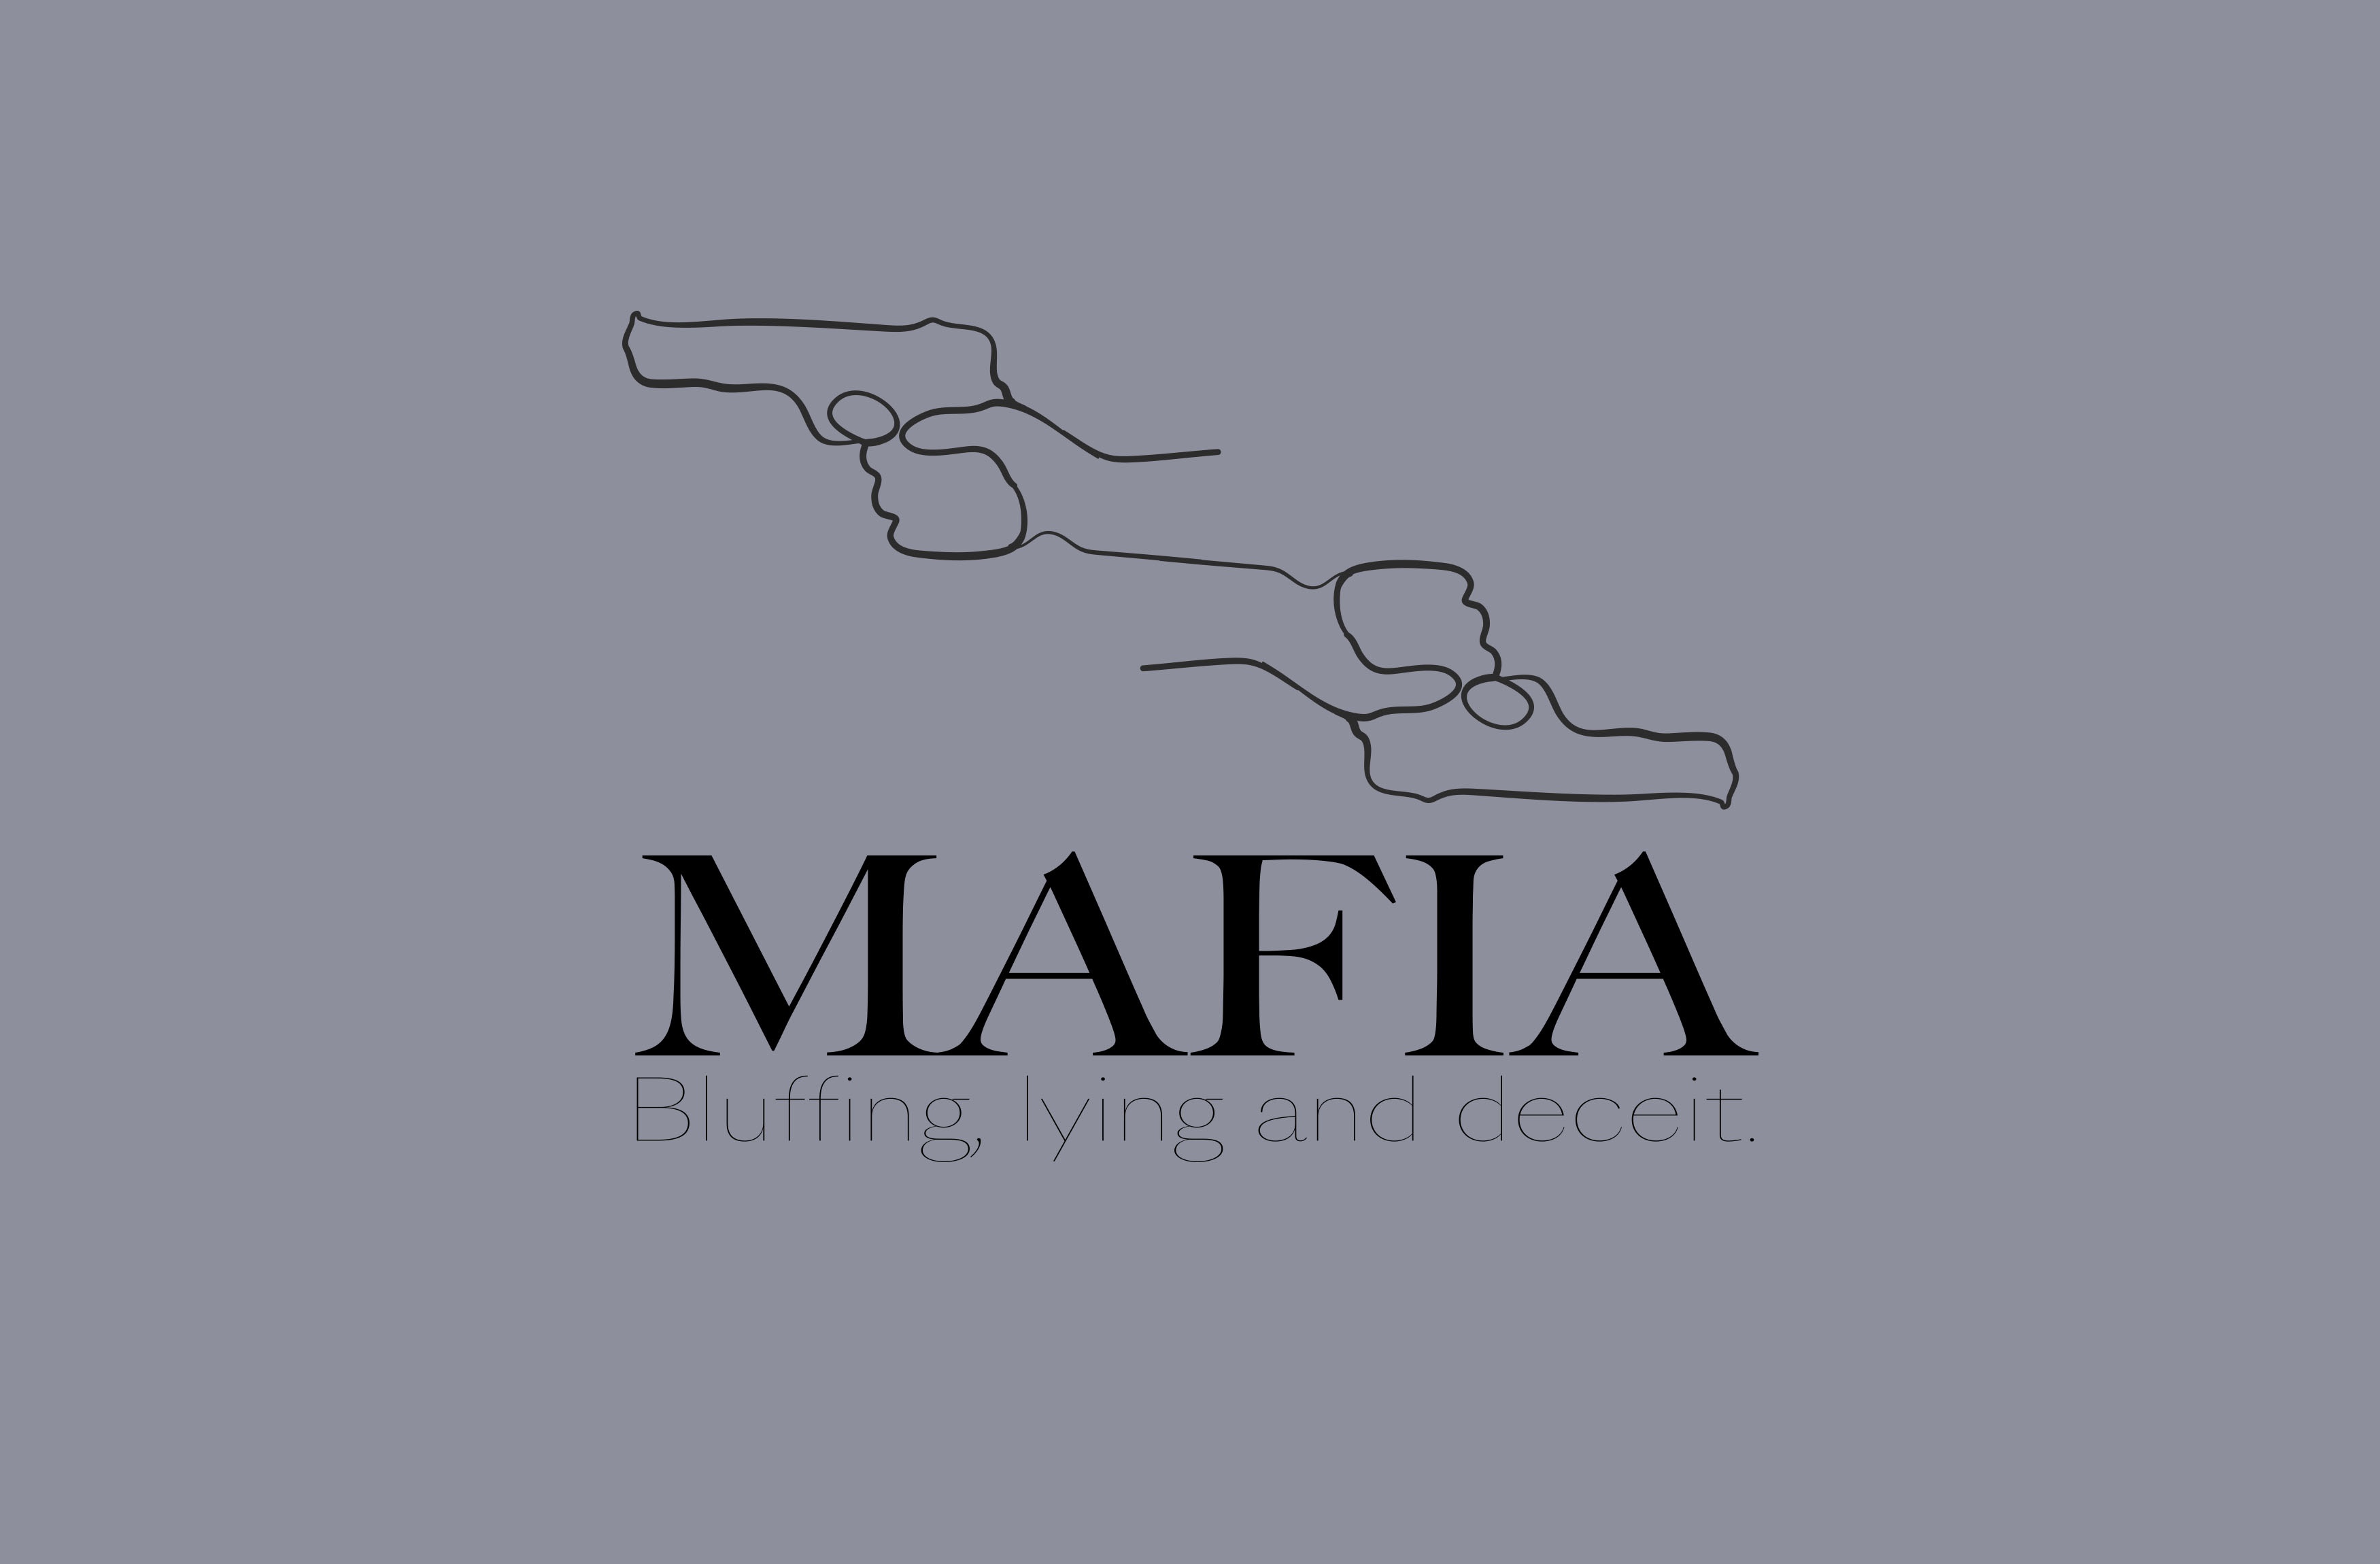 mafia image